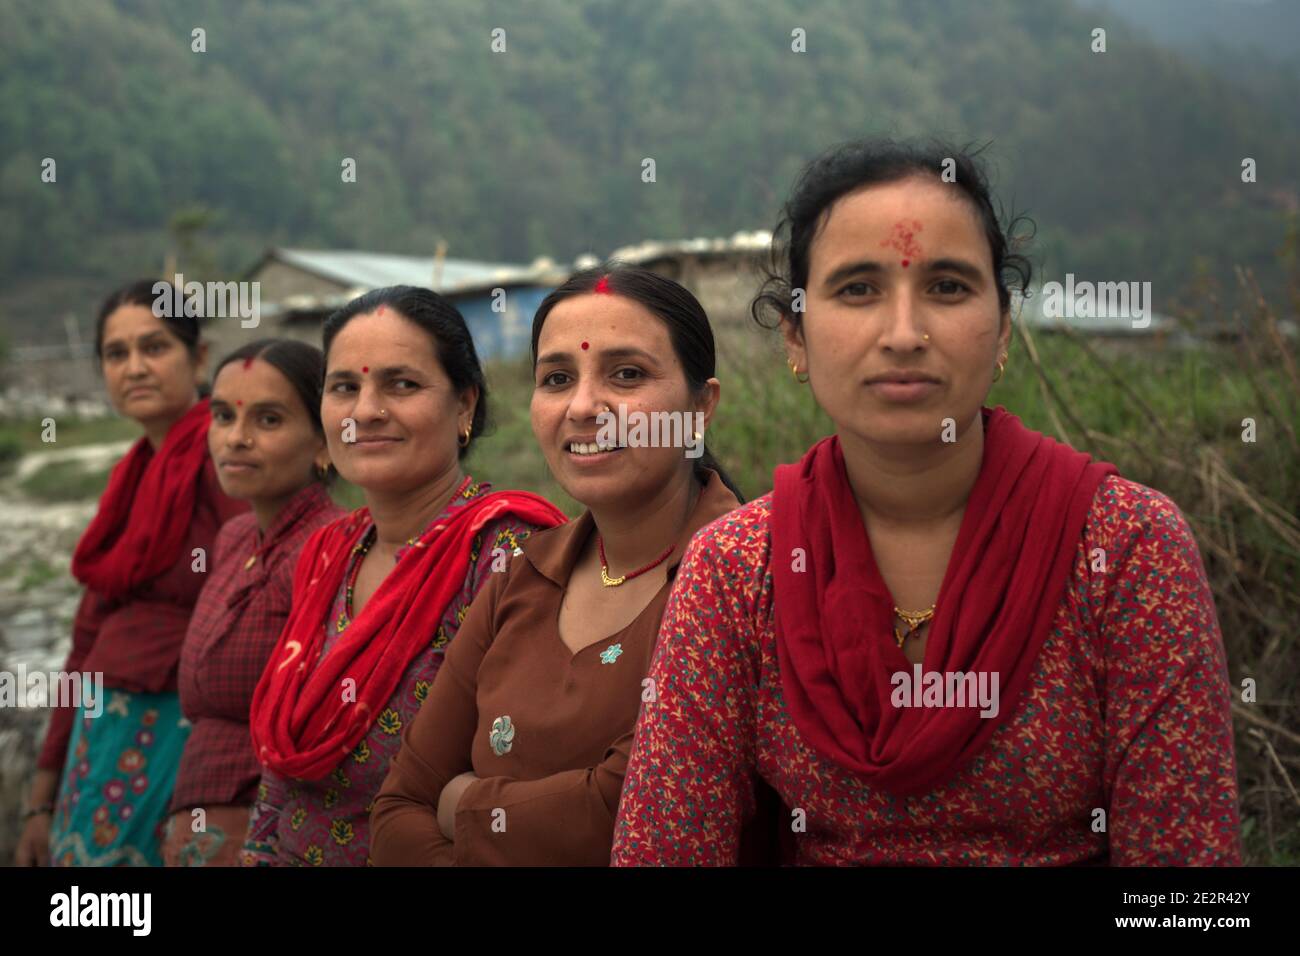 Ritratto di donne, abitanti di Khahare, in quanto si trovano vicino a un muro di gabione sul lato della pianura alluvionale di Harpan Khola nel distretto di Kaski, Gandaki, Nepal. Queste donne sono sopravvissute alle inondazioni e alle frane causate dalle piogge torrenziali nella zona di Bhaudare Tamagi, pochi mesi dopo i terremoti del 2015 (aprile-maggio 2015) in Nepal. Foto Stock